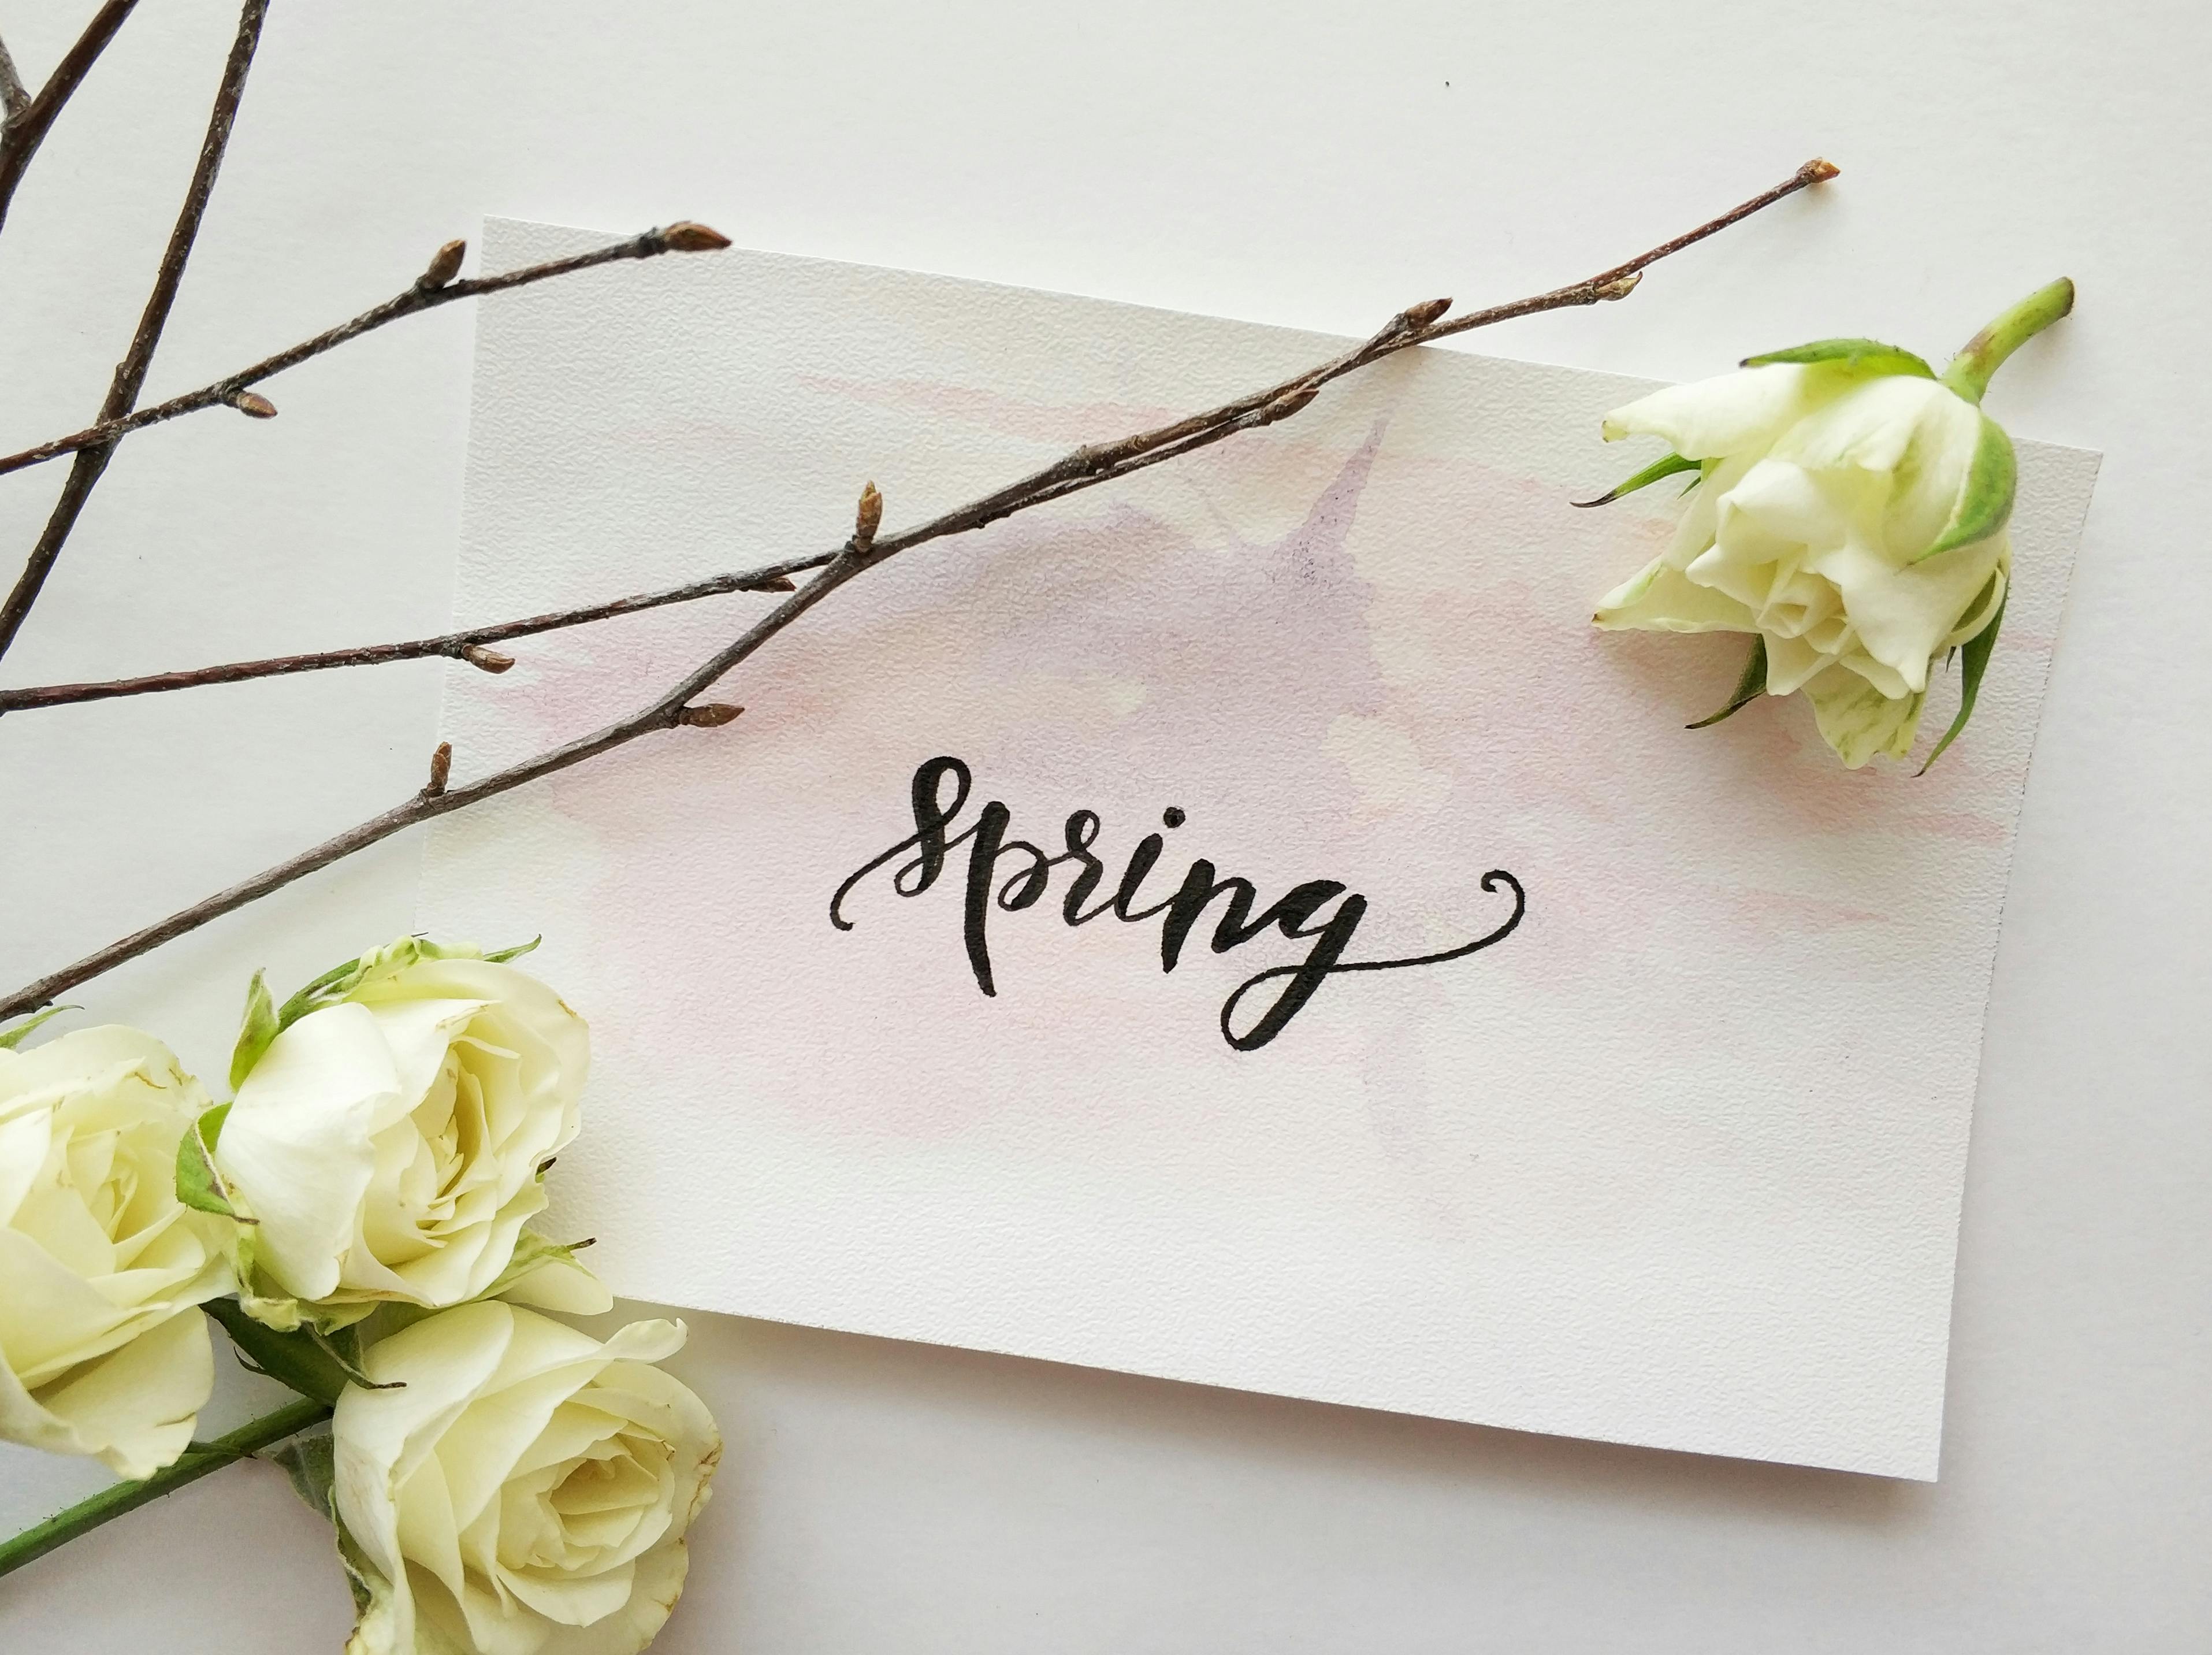 Spring Image